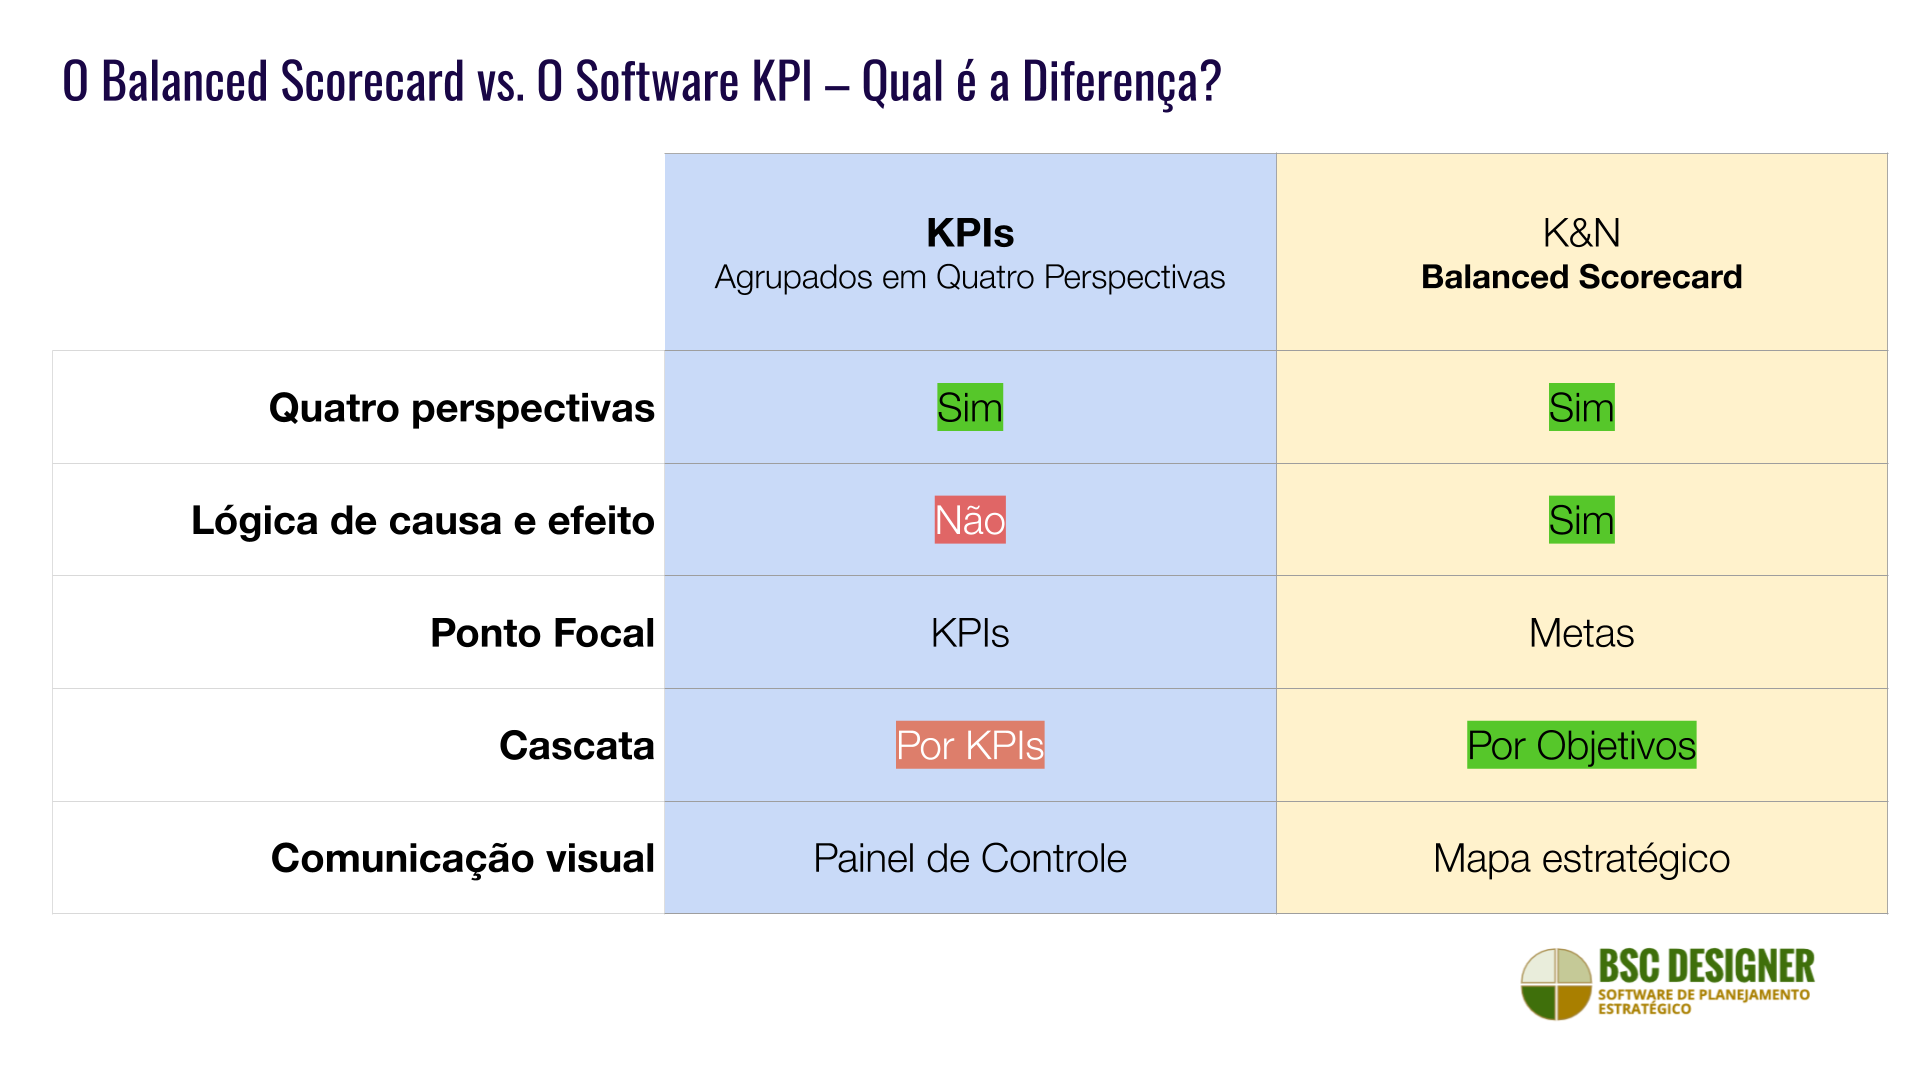 Software para K&N Balanced Scorecard em comparação com o software para KPIs